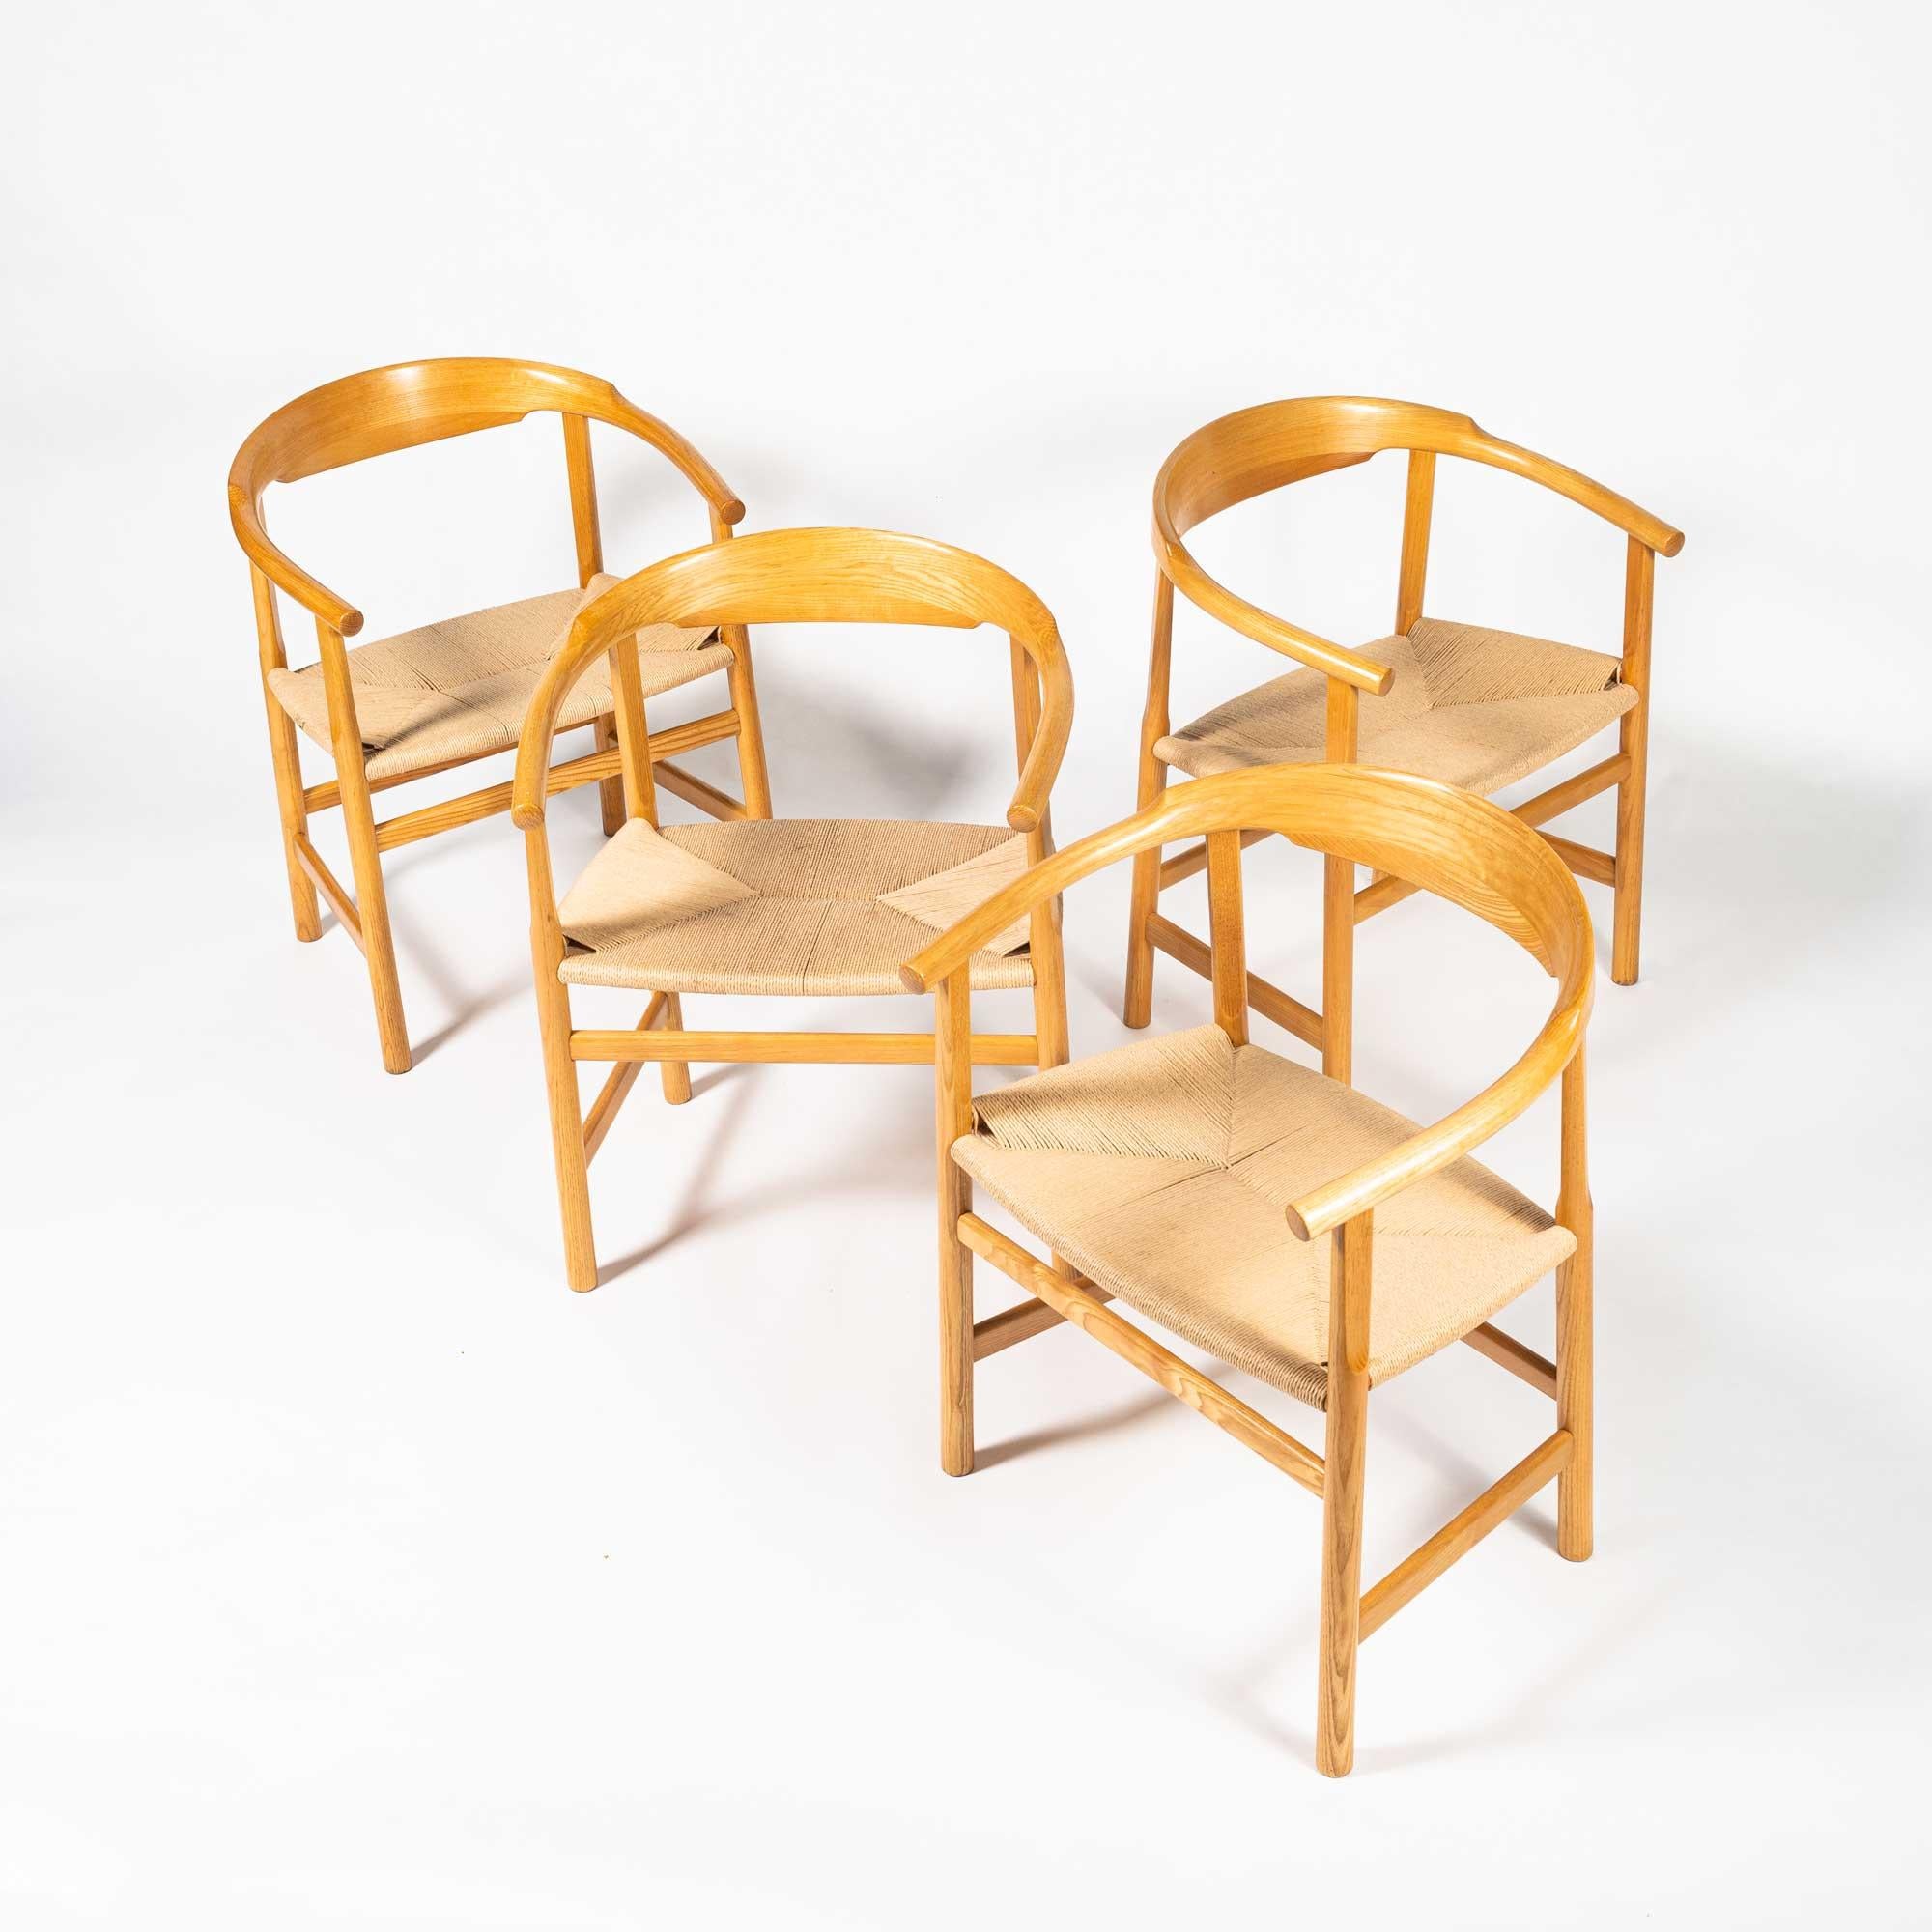 Ein seltener Satz von vier PP209 Hans Wegner Sesseln in geölter Eiche und Papierkordel, hergestellt von PP Møbler (für DSB Fähren), zwischen 1974 und 2004. Im Gegensatz zum Round Chair wurde die Rückenlehne für dieses Modell aus einem einzigen Stück